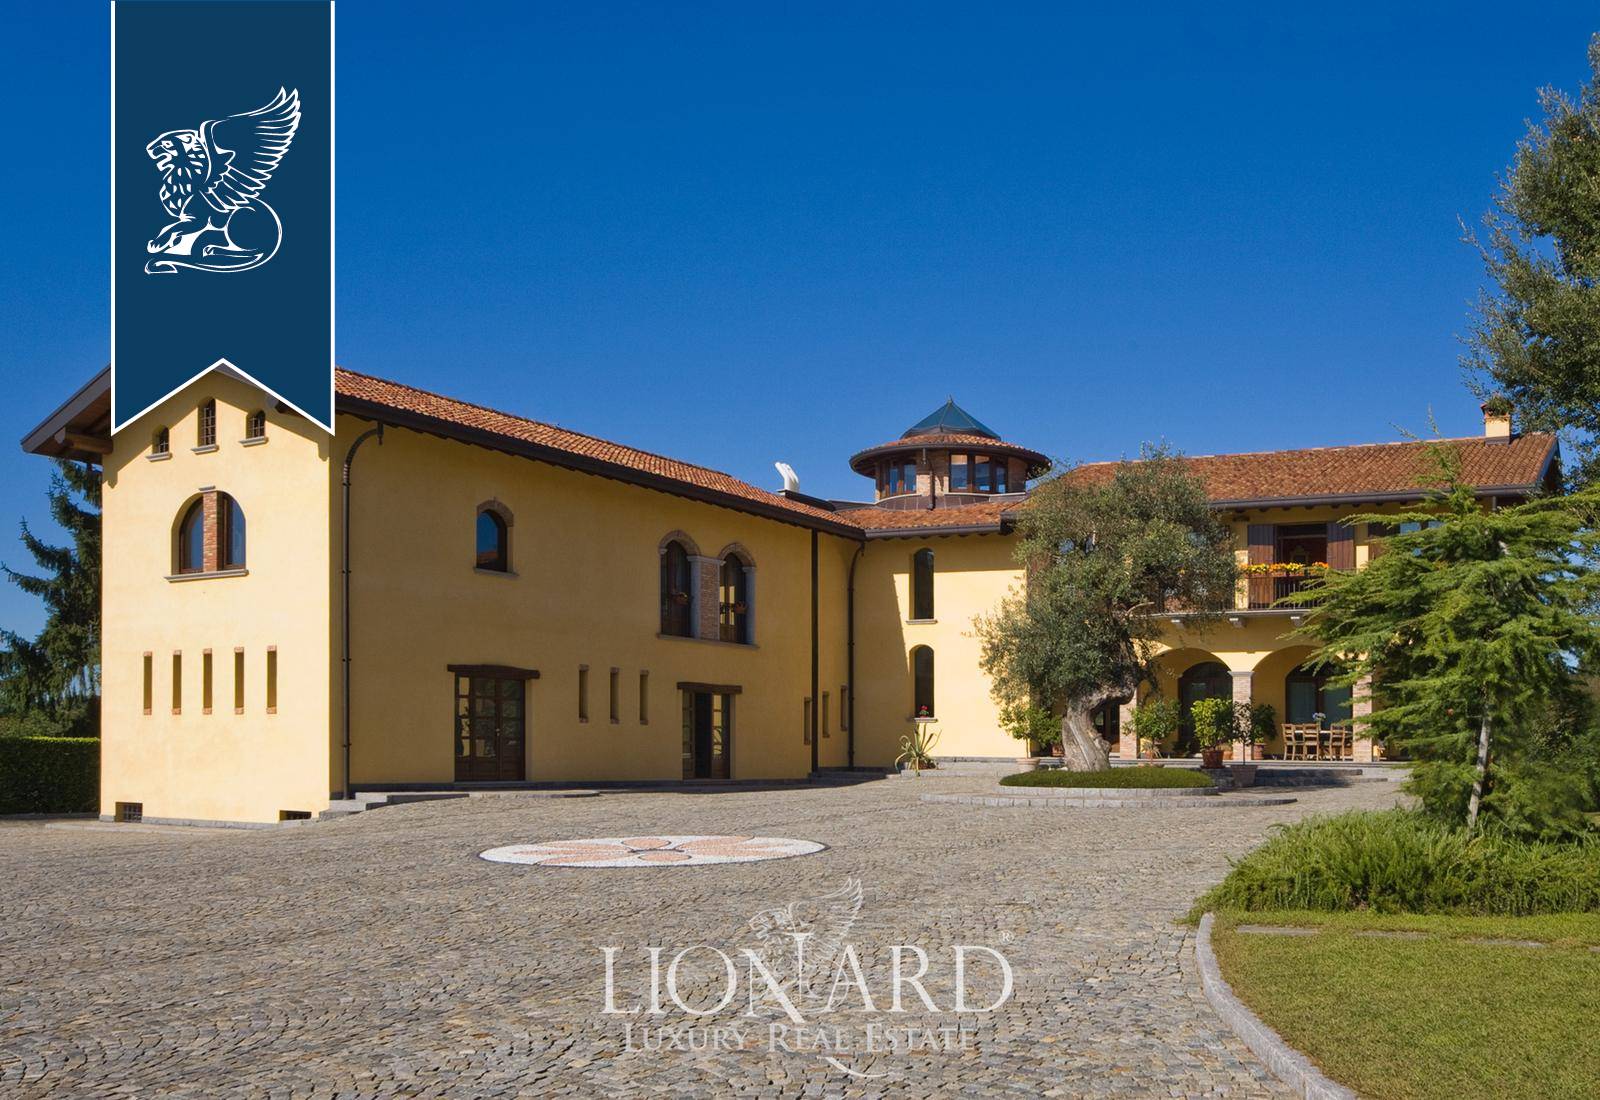 Villa in Vendita a Montano Lucino: 0 locali, 1200 mq - Foto 1